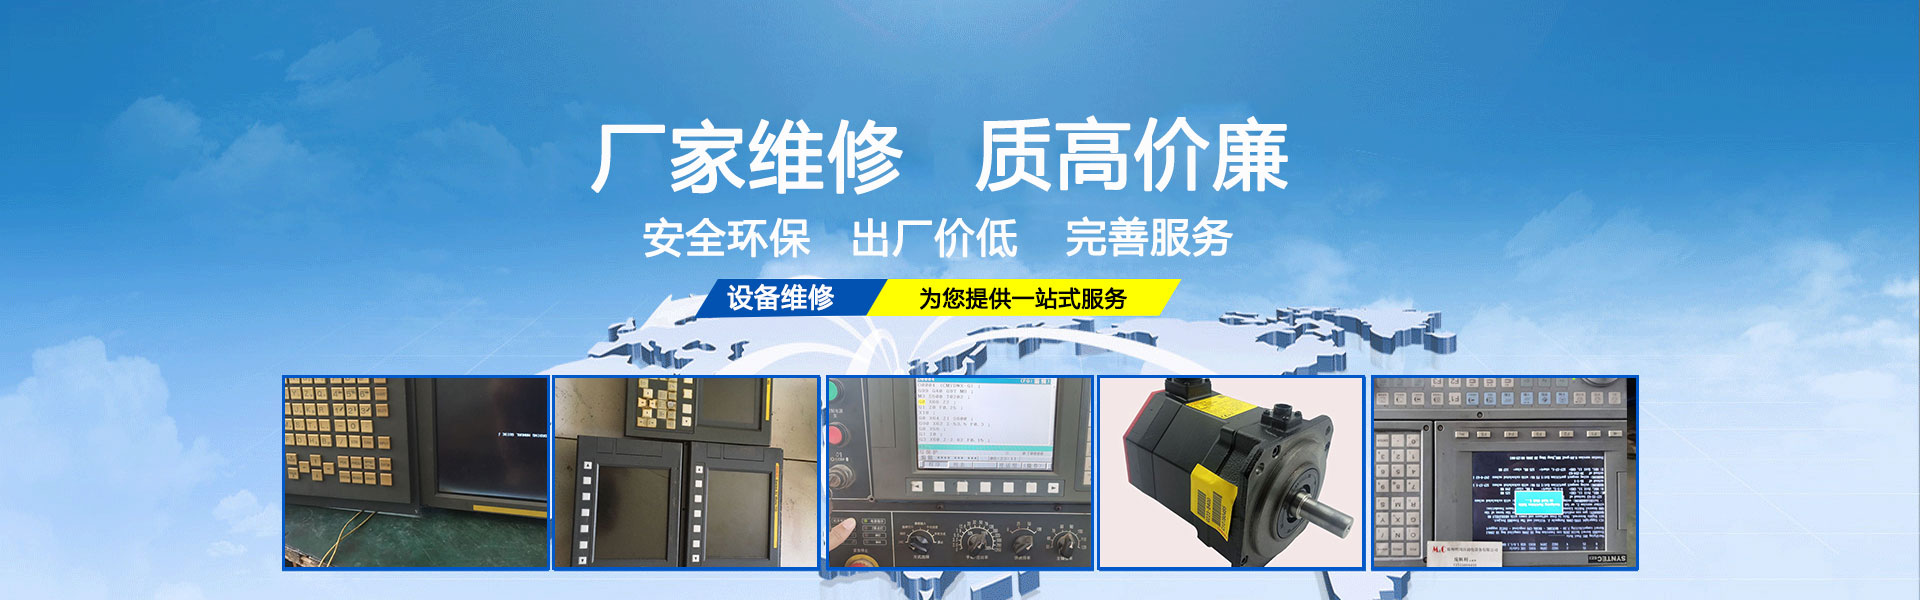 郑州明川自动化设备有限公司